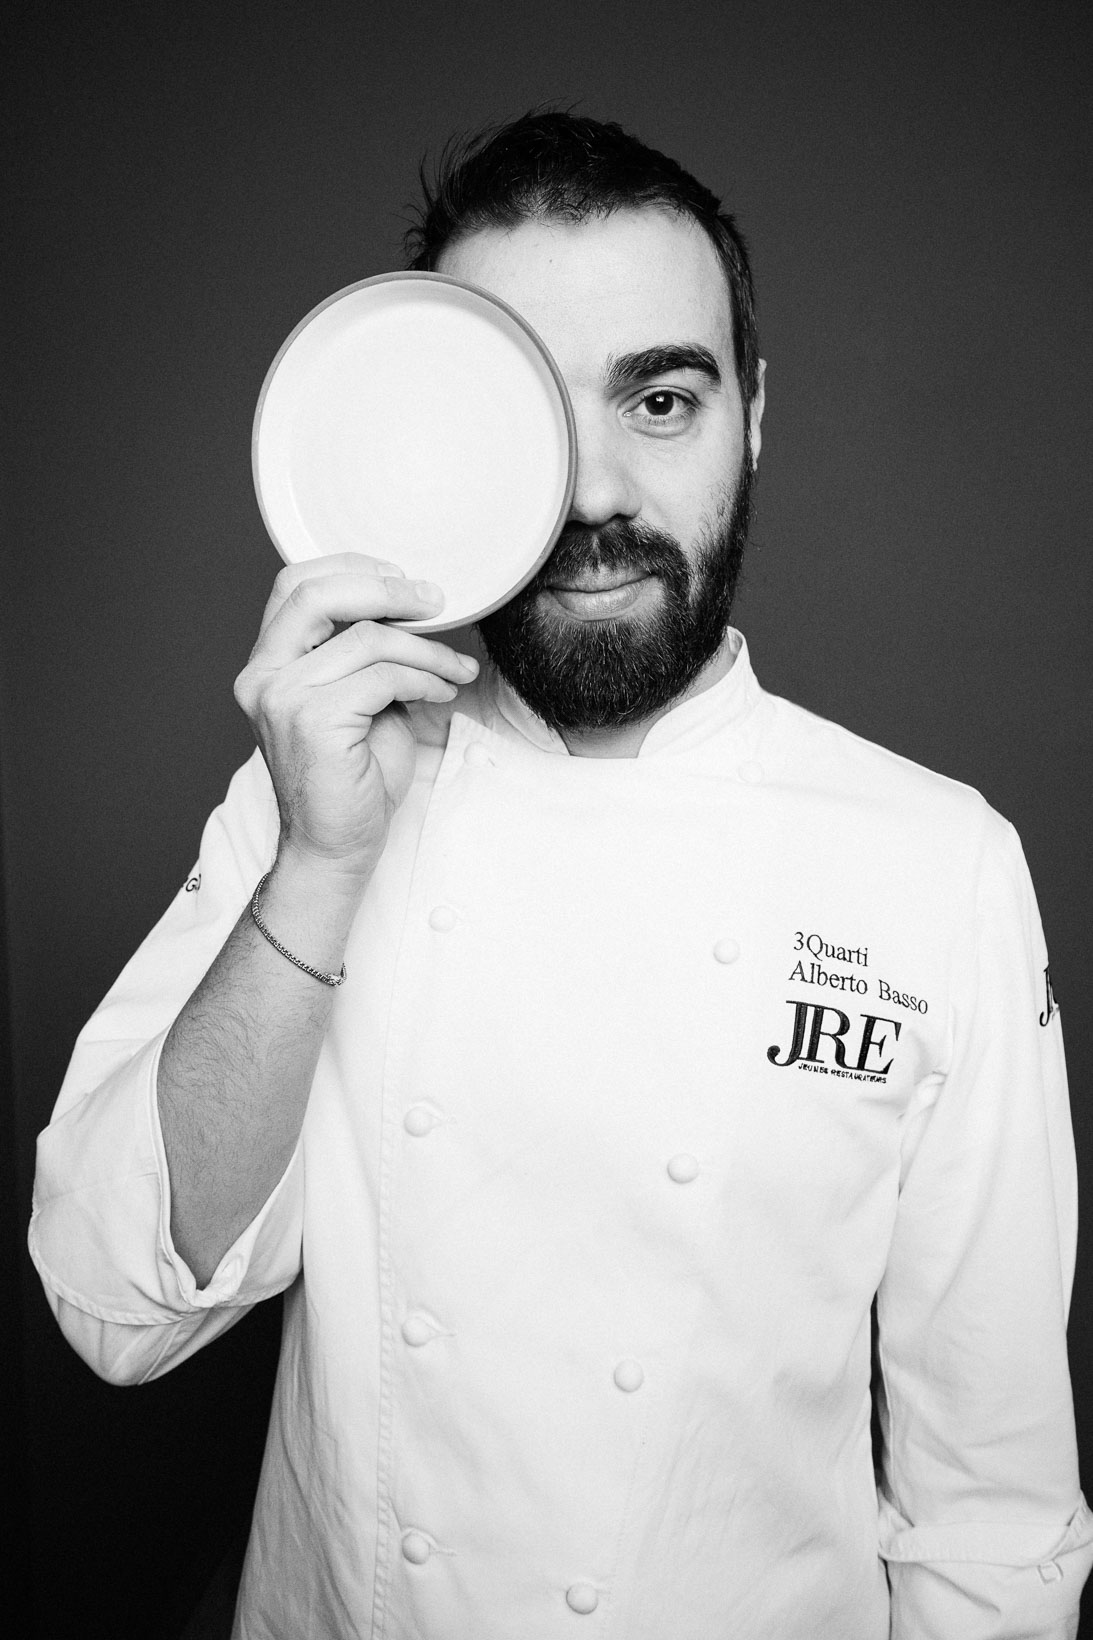 Rui-Lorenzo-Fotografo-food-chef-alberto-basso-ristorante-3-quarti-grancona-vi-_RUI7538_p_web